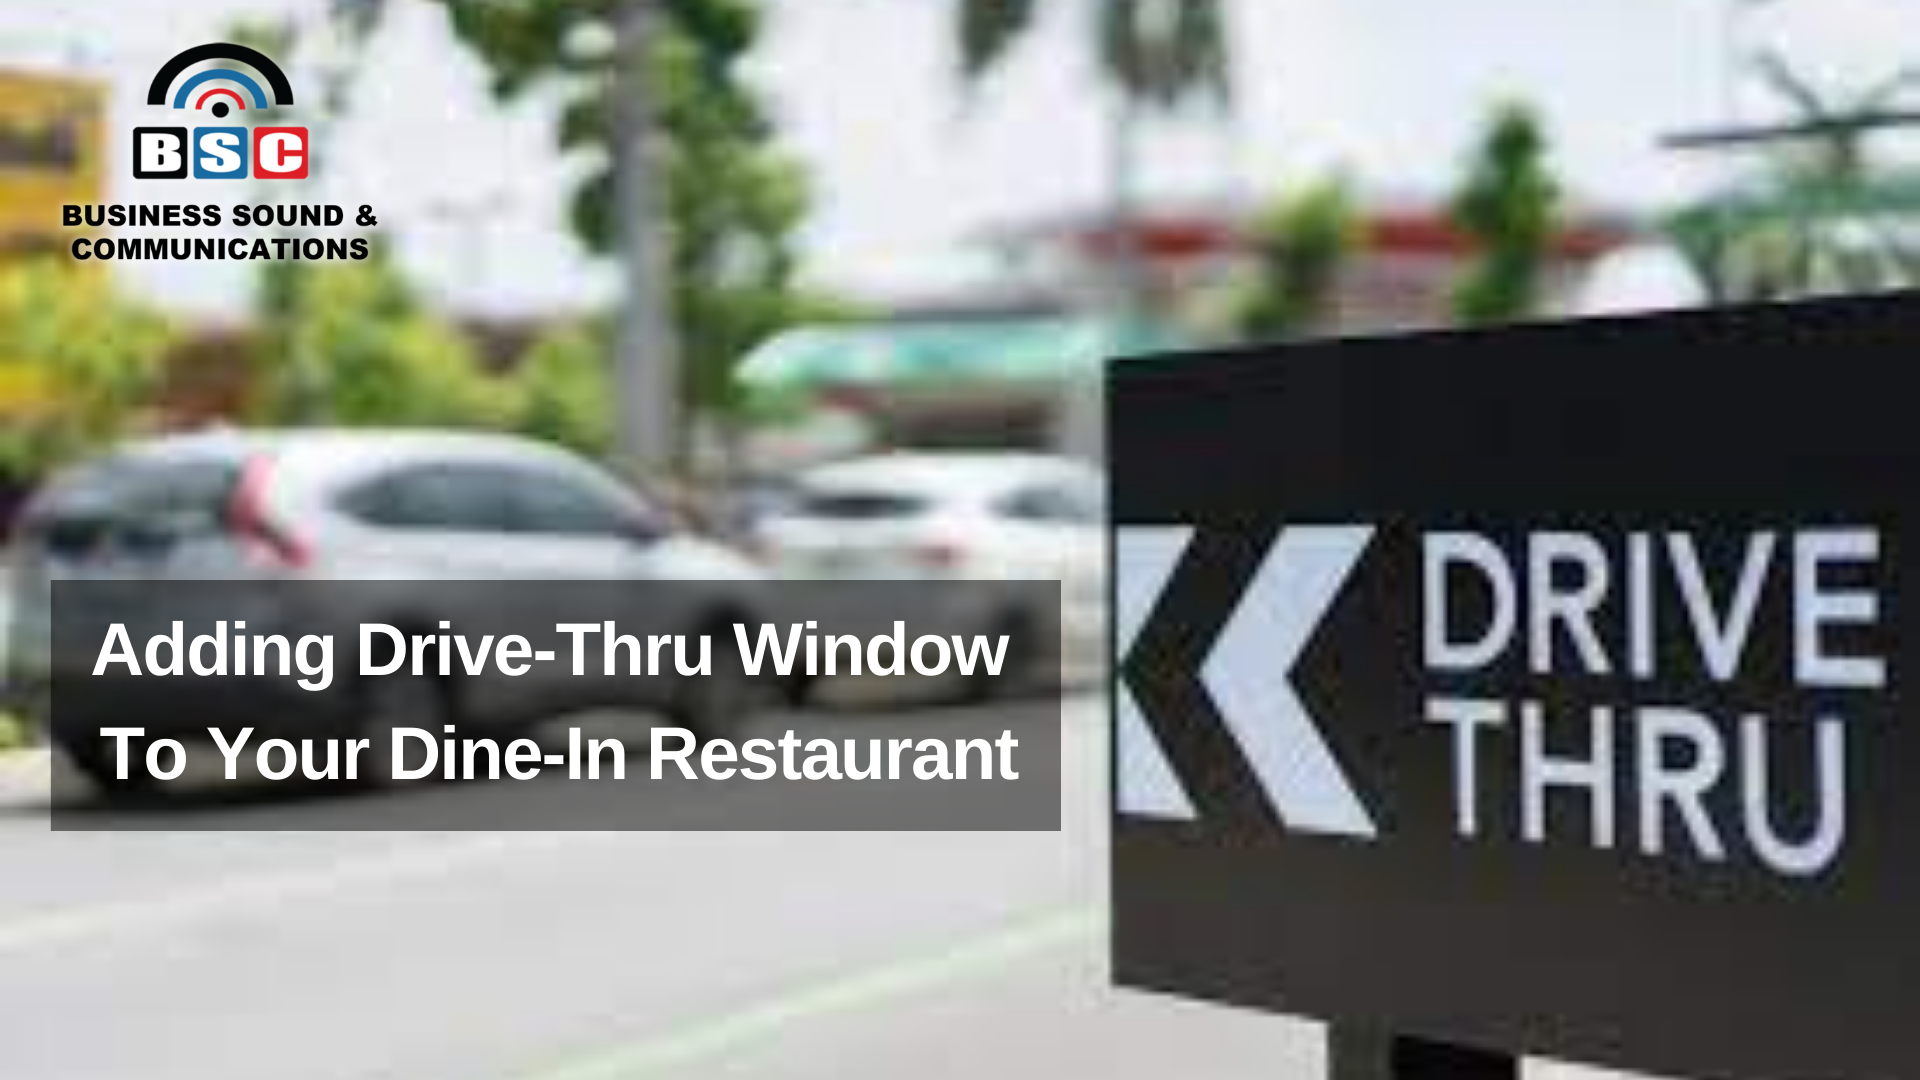 Adding Drive-Thru Window To Your Dine-In Restaurant